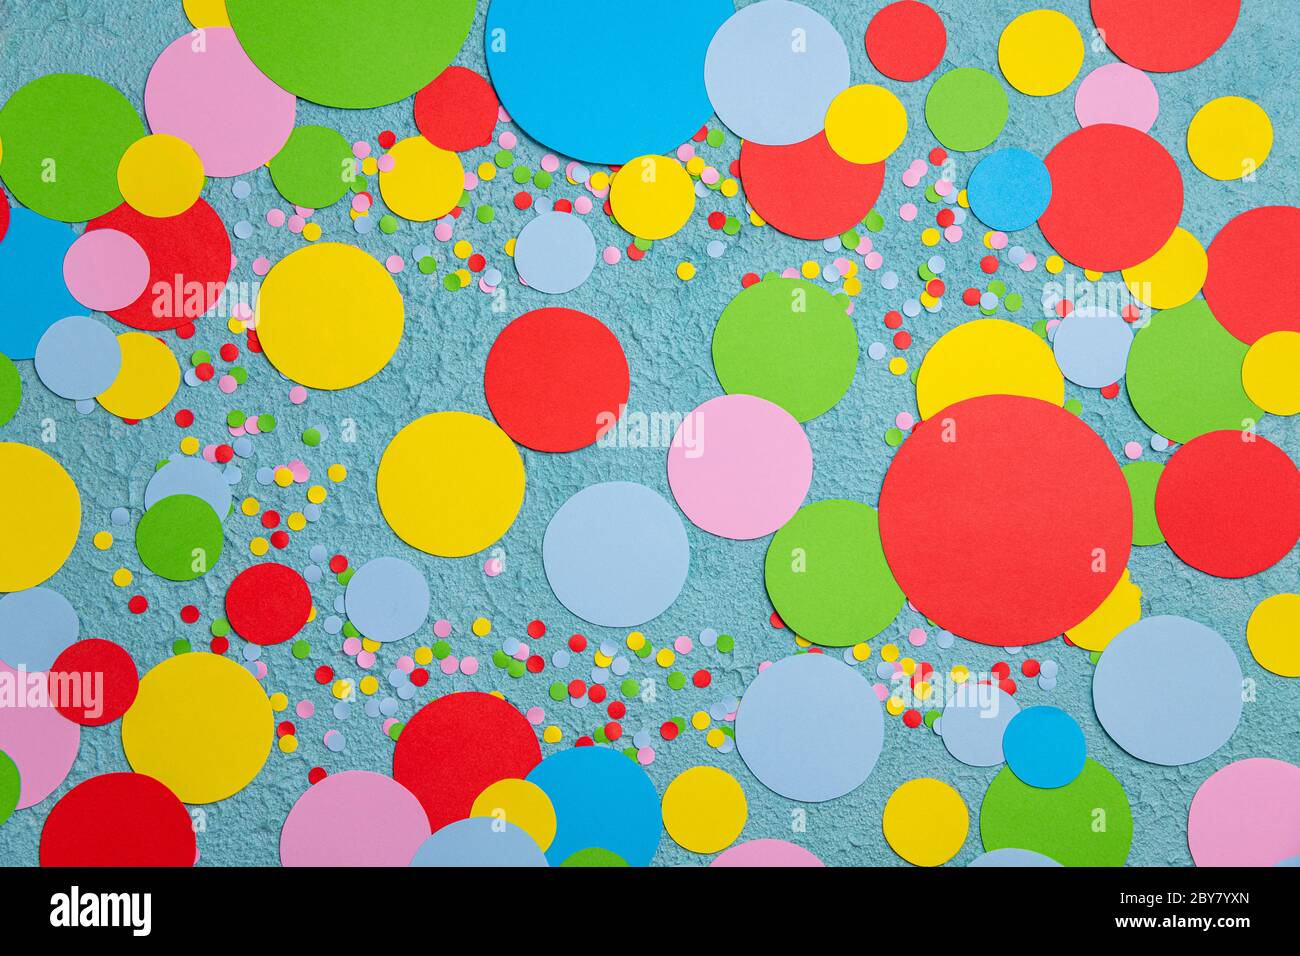 Fête festive ou carnaval avec confetti colorés sur fond bleu vue du dessus. Joyeux anniversaire, fête, fête, fête, concept de vacances Banque D'Images